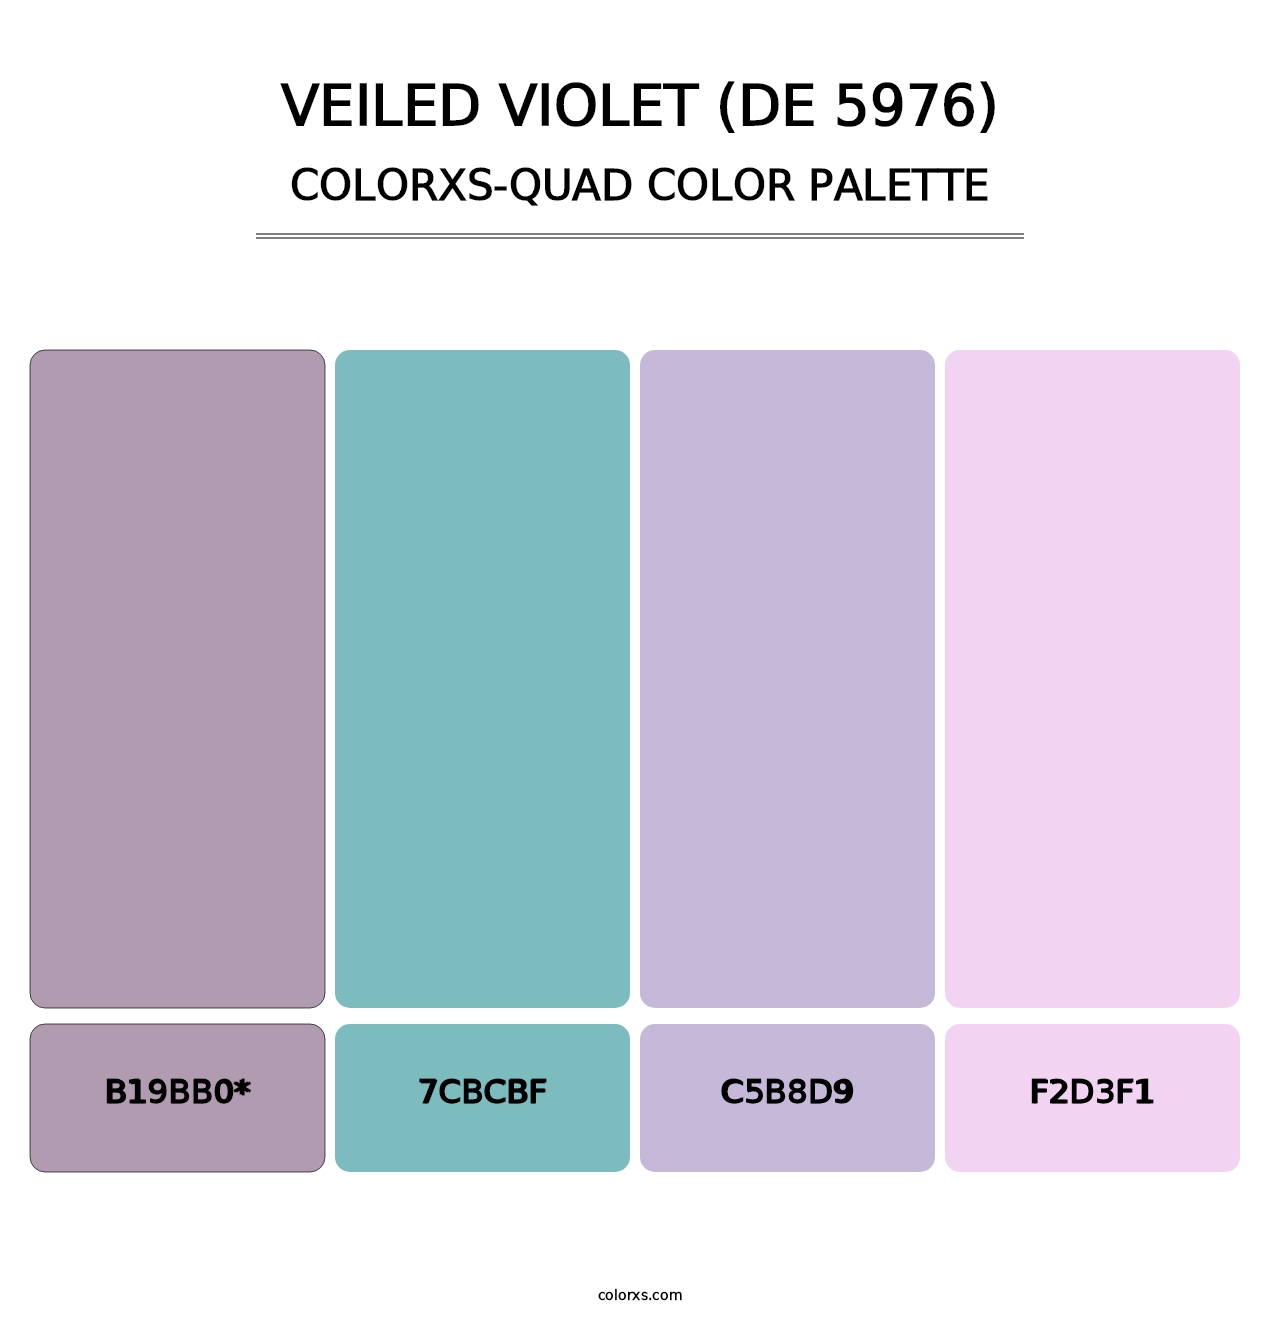 Veiled Violet (DE 5976) - Colorxs Quad Palette